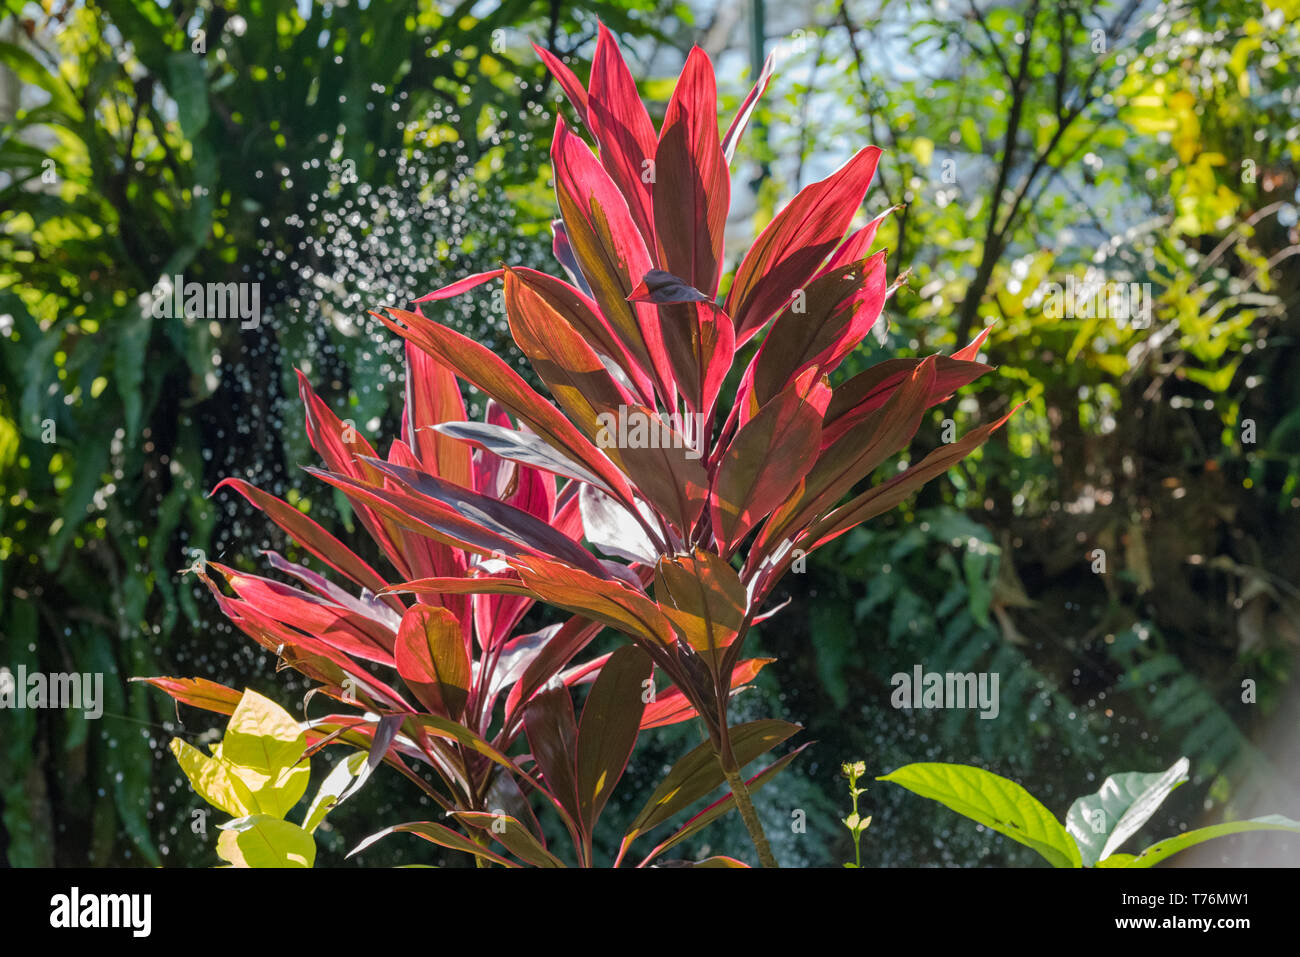 Photo d'un Heliconia plante dans un jardin malaisienne prise avec un objectif zoom. Banque D'Images